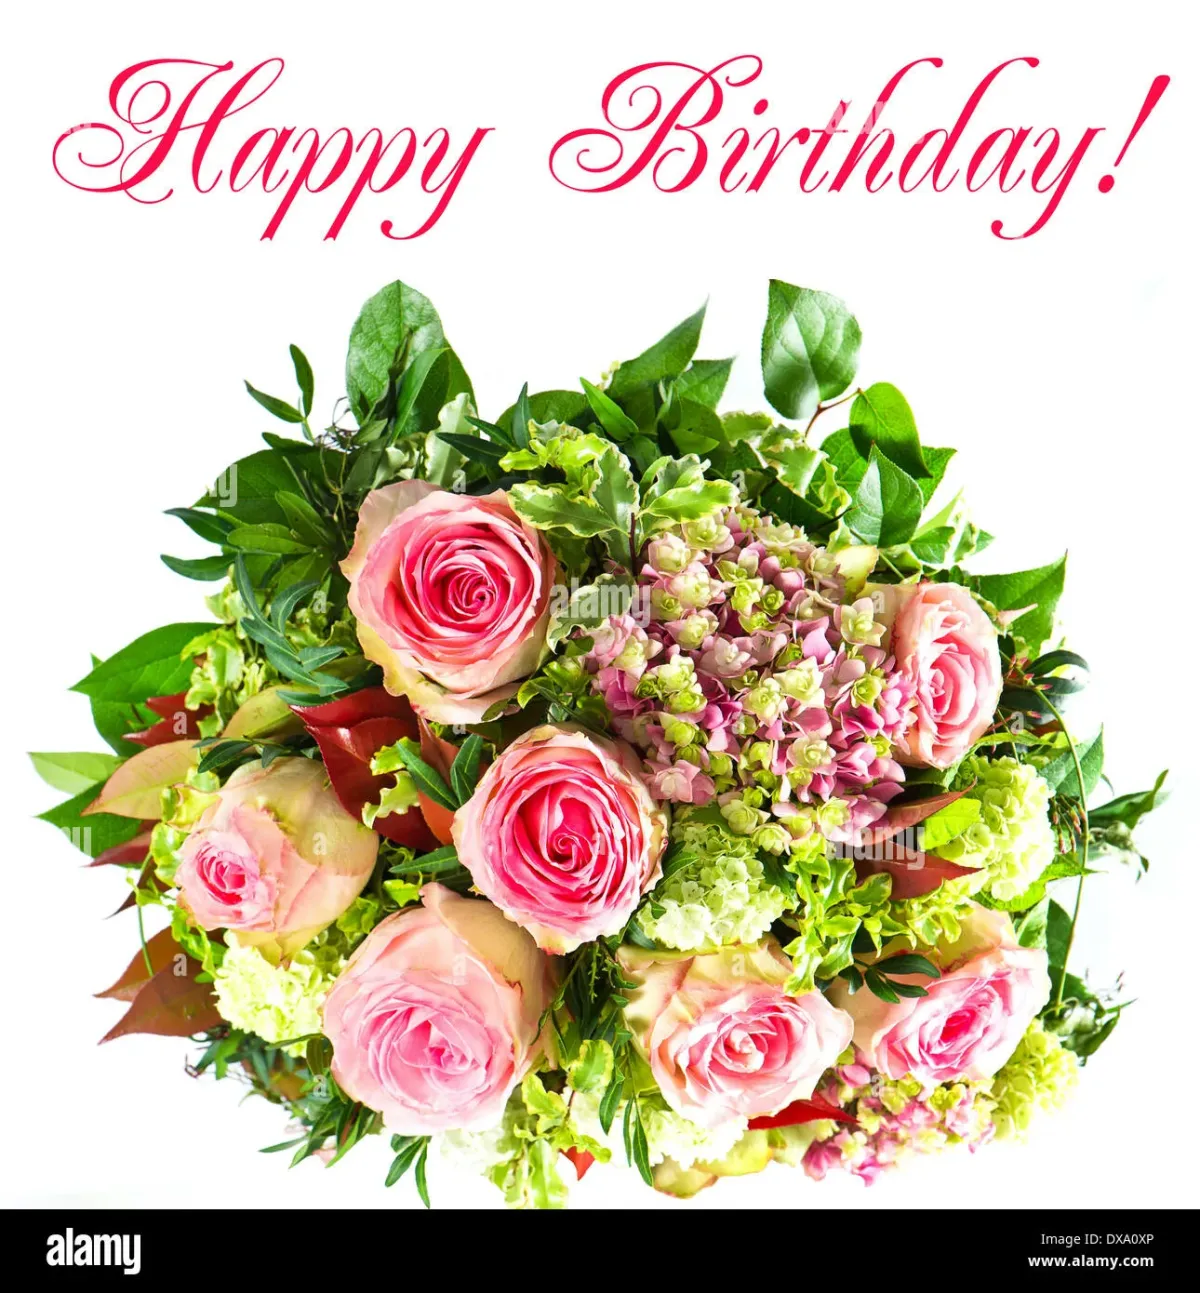 Поздравление с днем рождения на английском женщине. Букет "день рождения". С днём рождения женщине красивые букеты. Букет цветов картинки с днем рождения. Поздравляю! (Цветок).